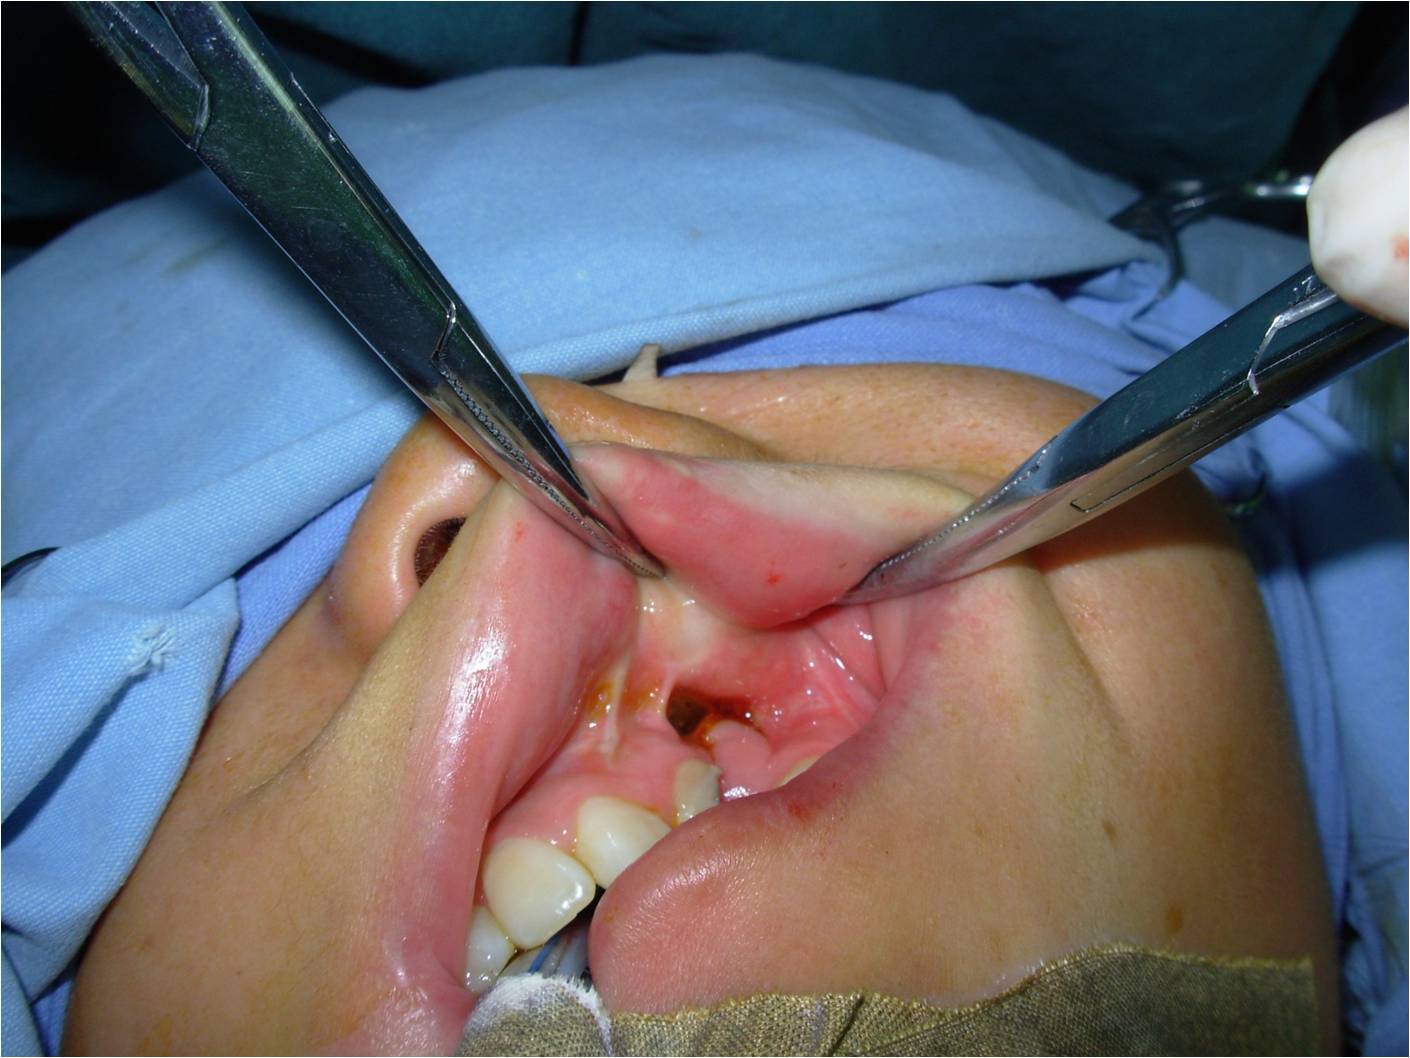 唇裂鼻畸形整复前要通过牙槽嵴裂植骨抬高塌陷鼻翼基底